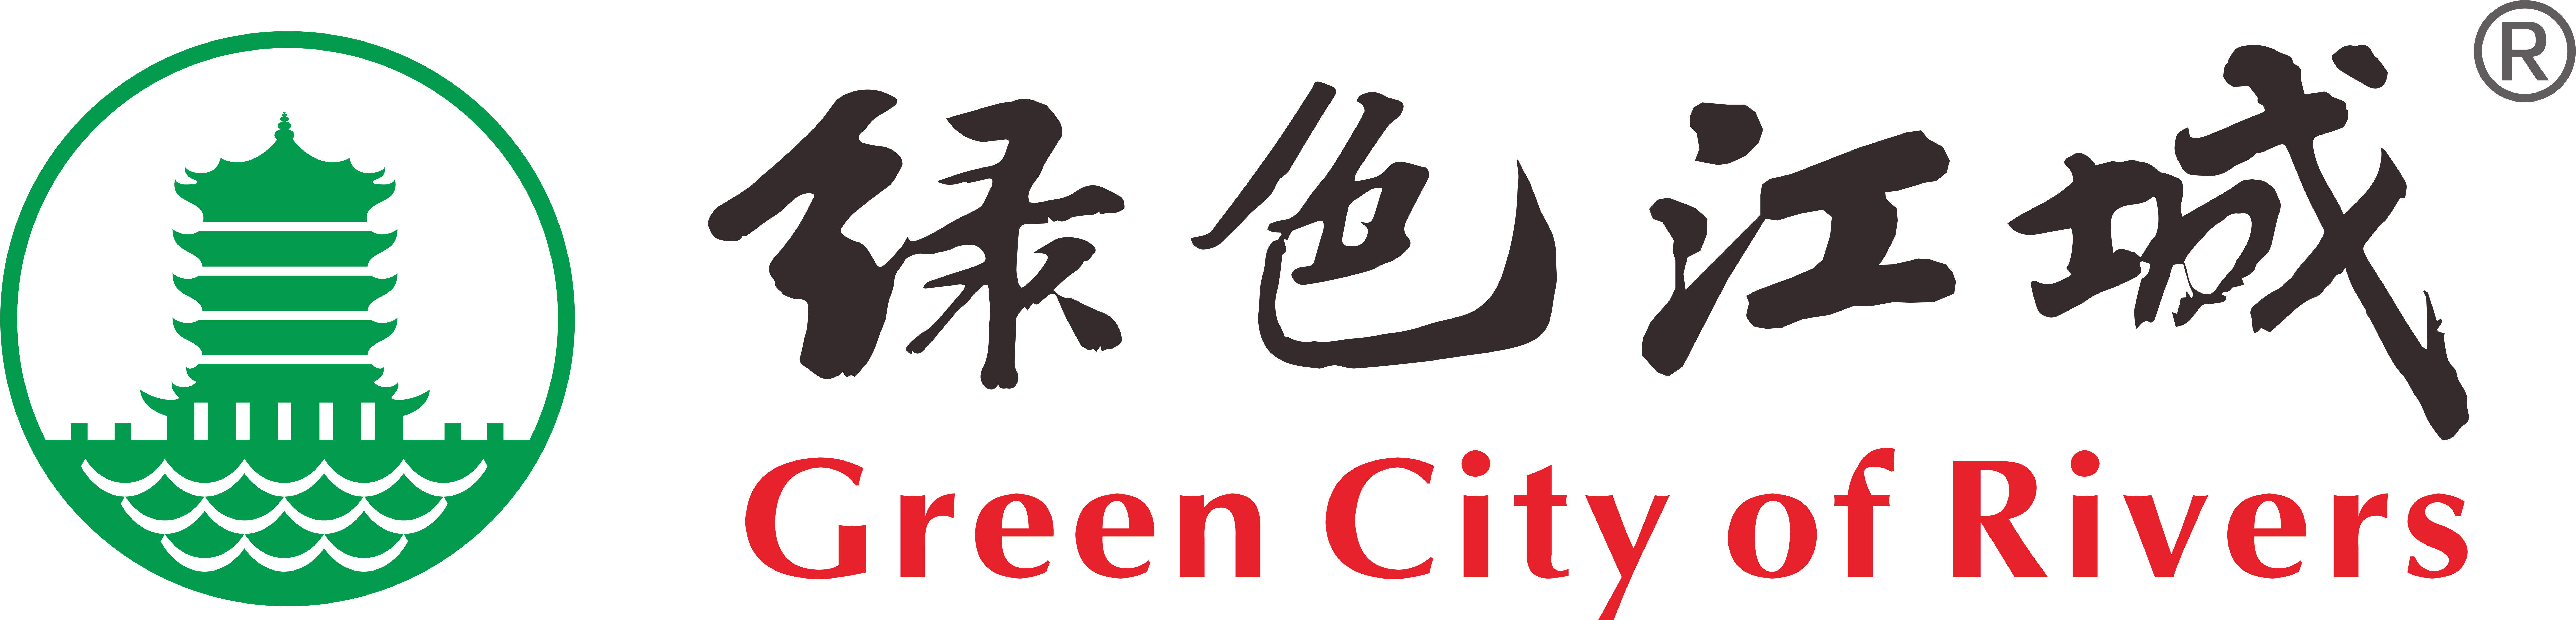 武汉环保社会组织“绿色江城”